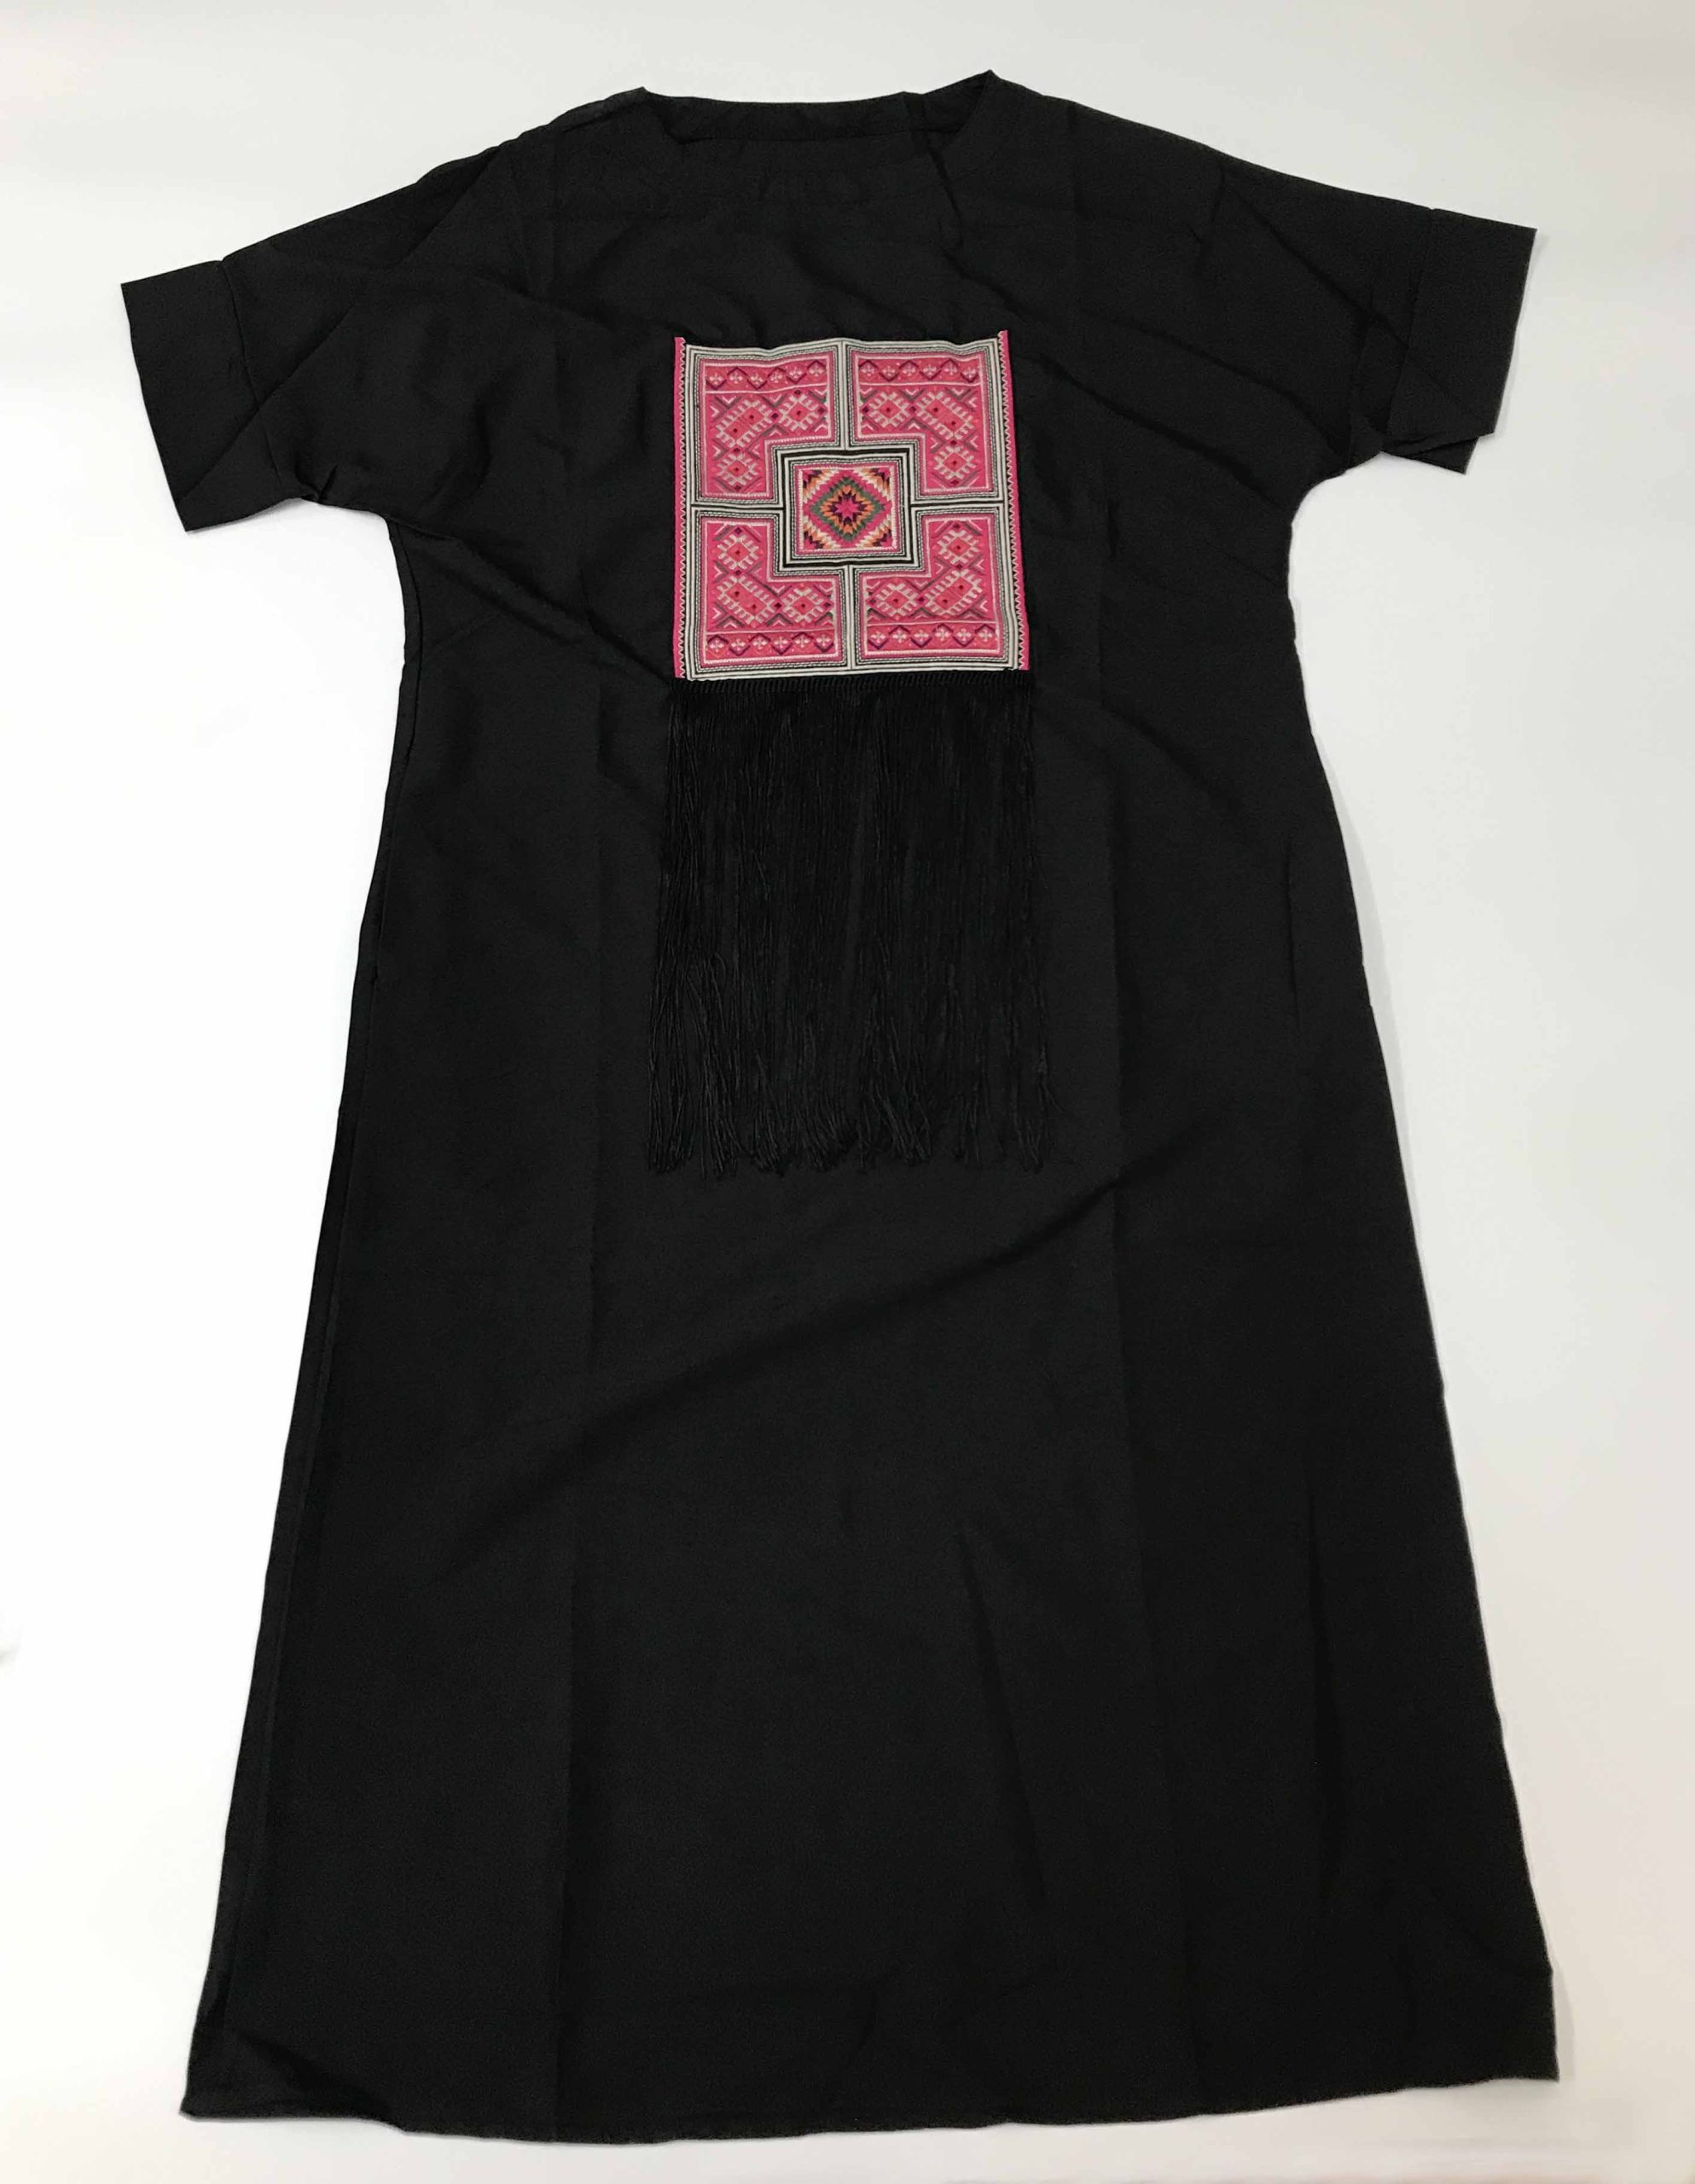 Vestido largo negro manga - Galerías el Triunfo - 291001736645